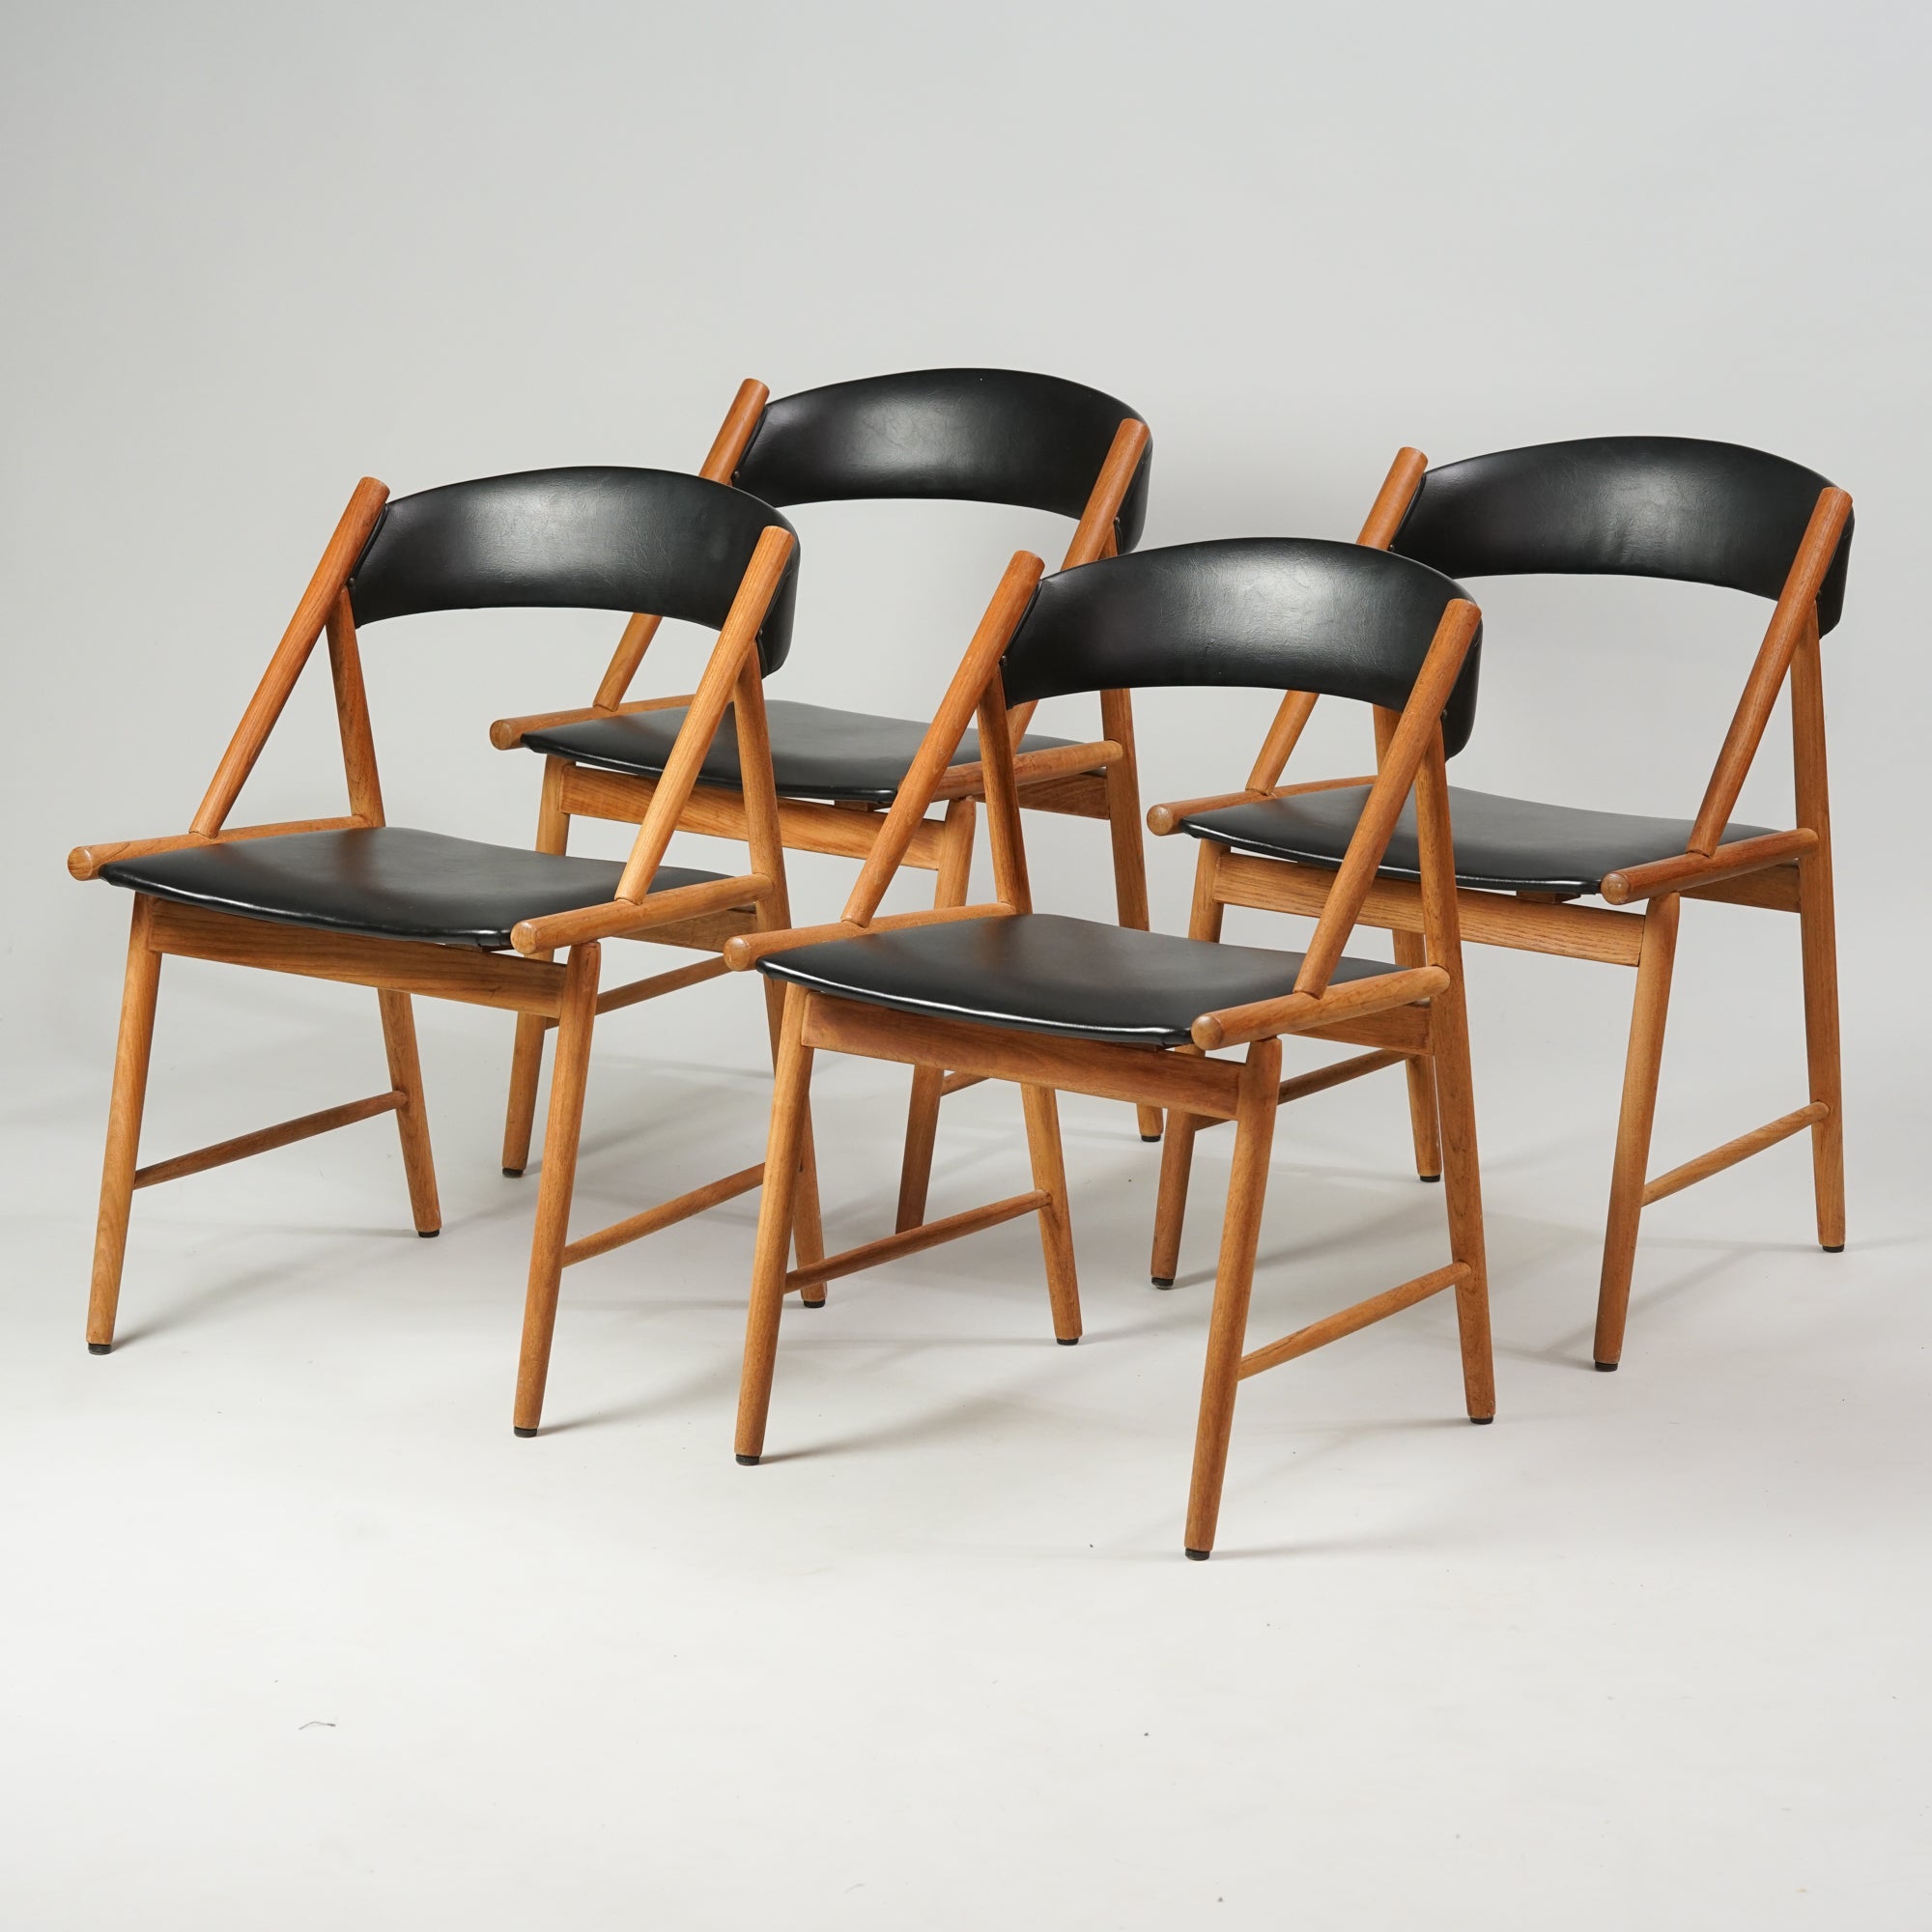 Neljä samanlaista tuolia. Tuolit on tehty tammesta, istuimet ja selkänojat keinonahkaa.